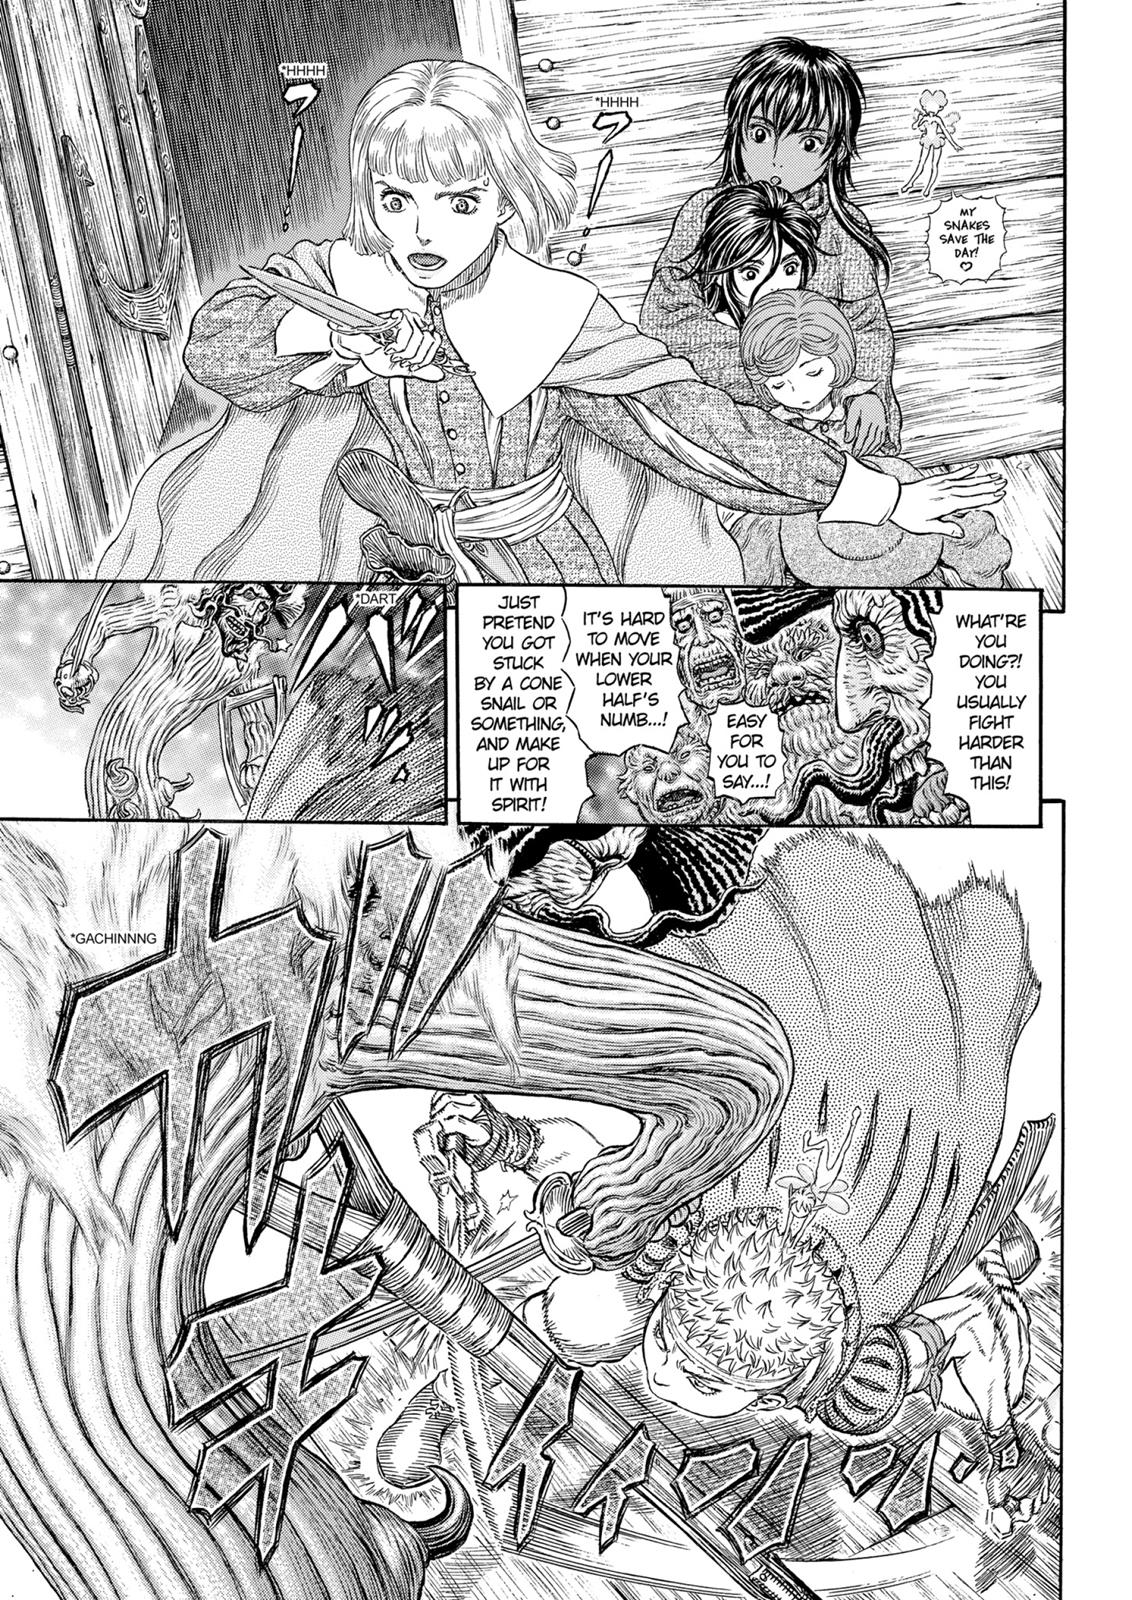 Berserk Manga Chapter 321 image 21